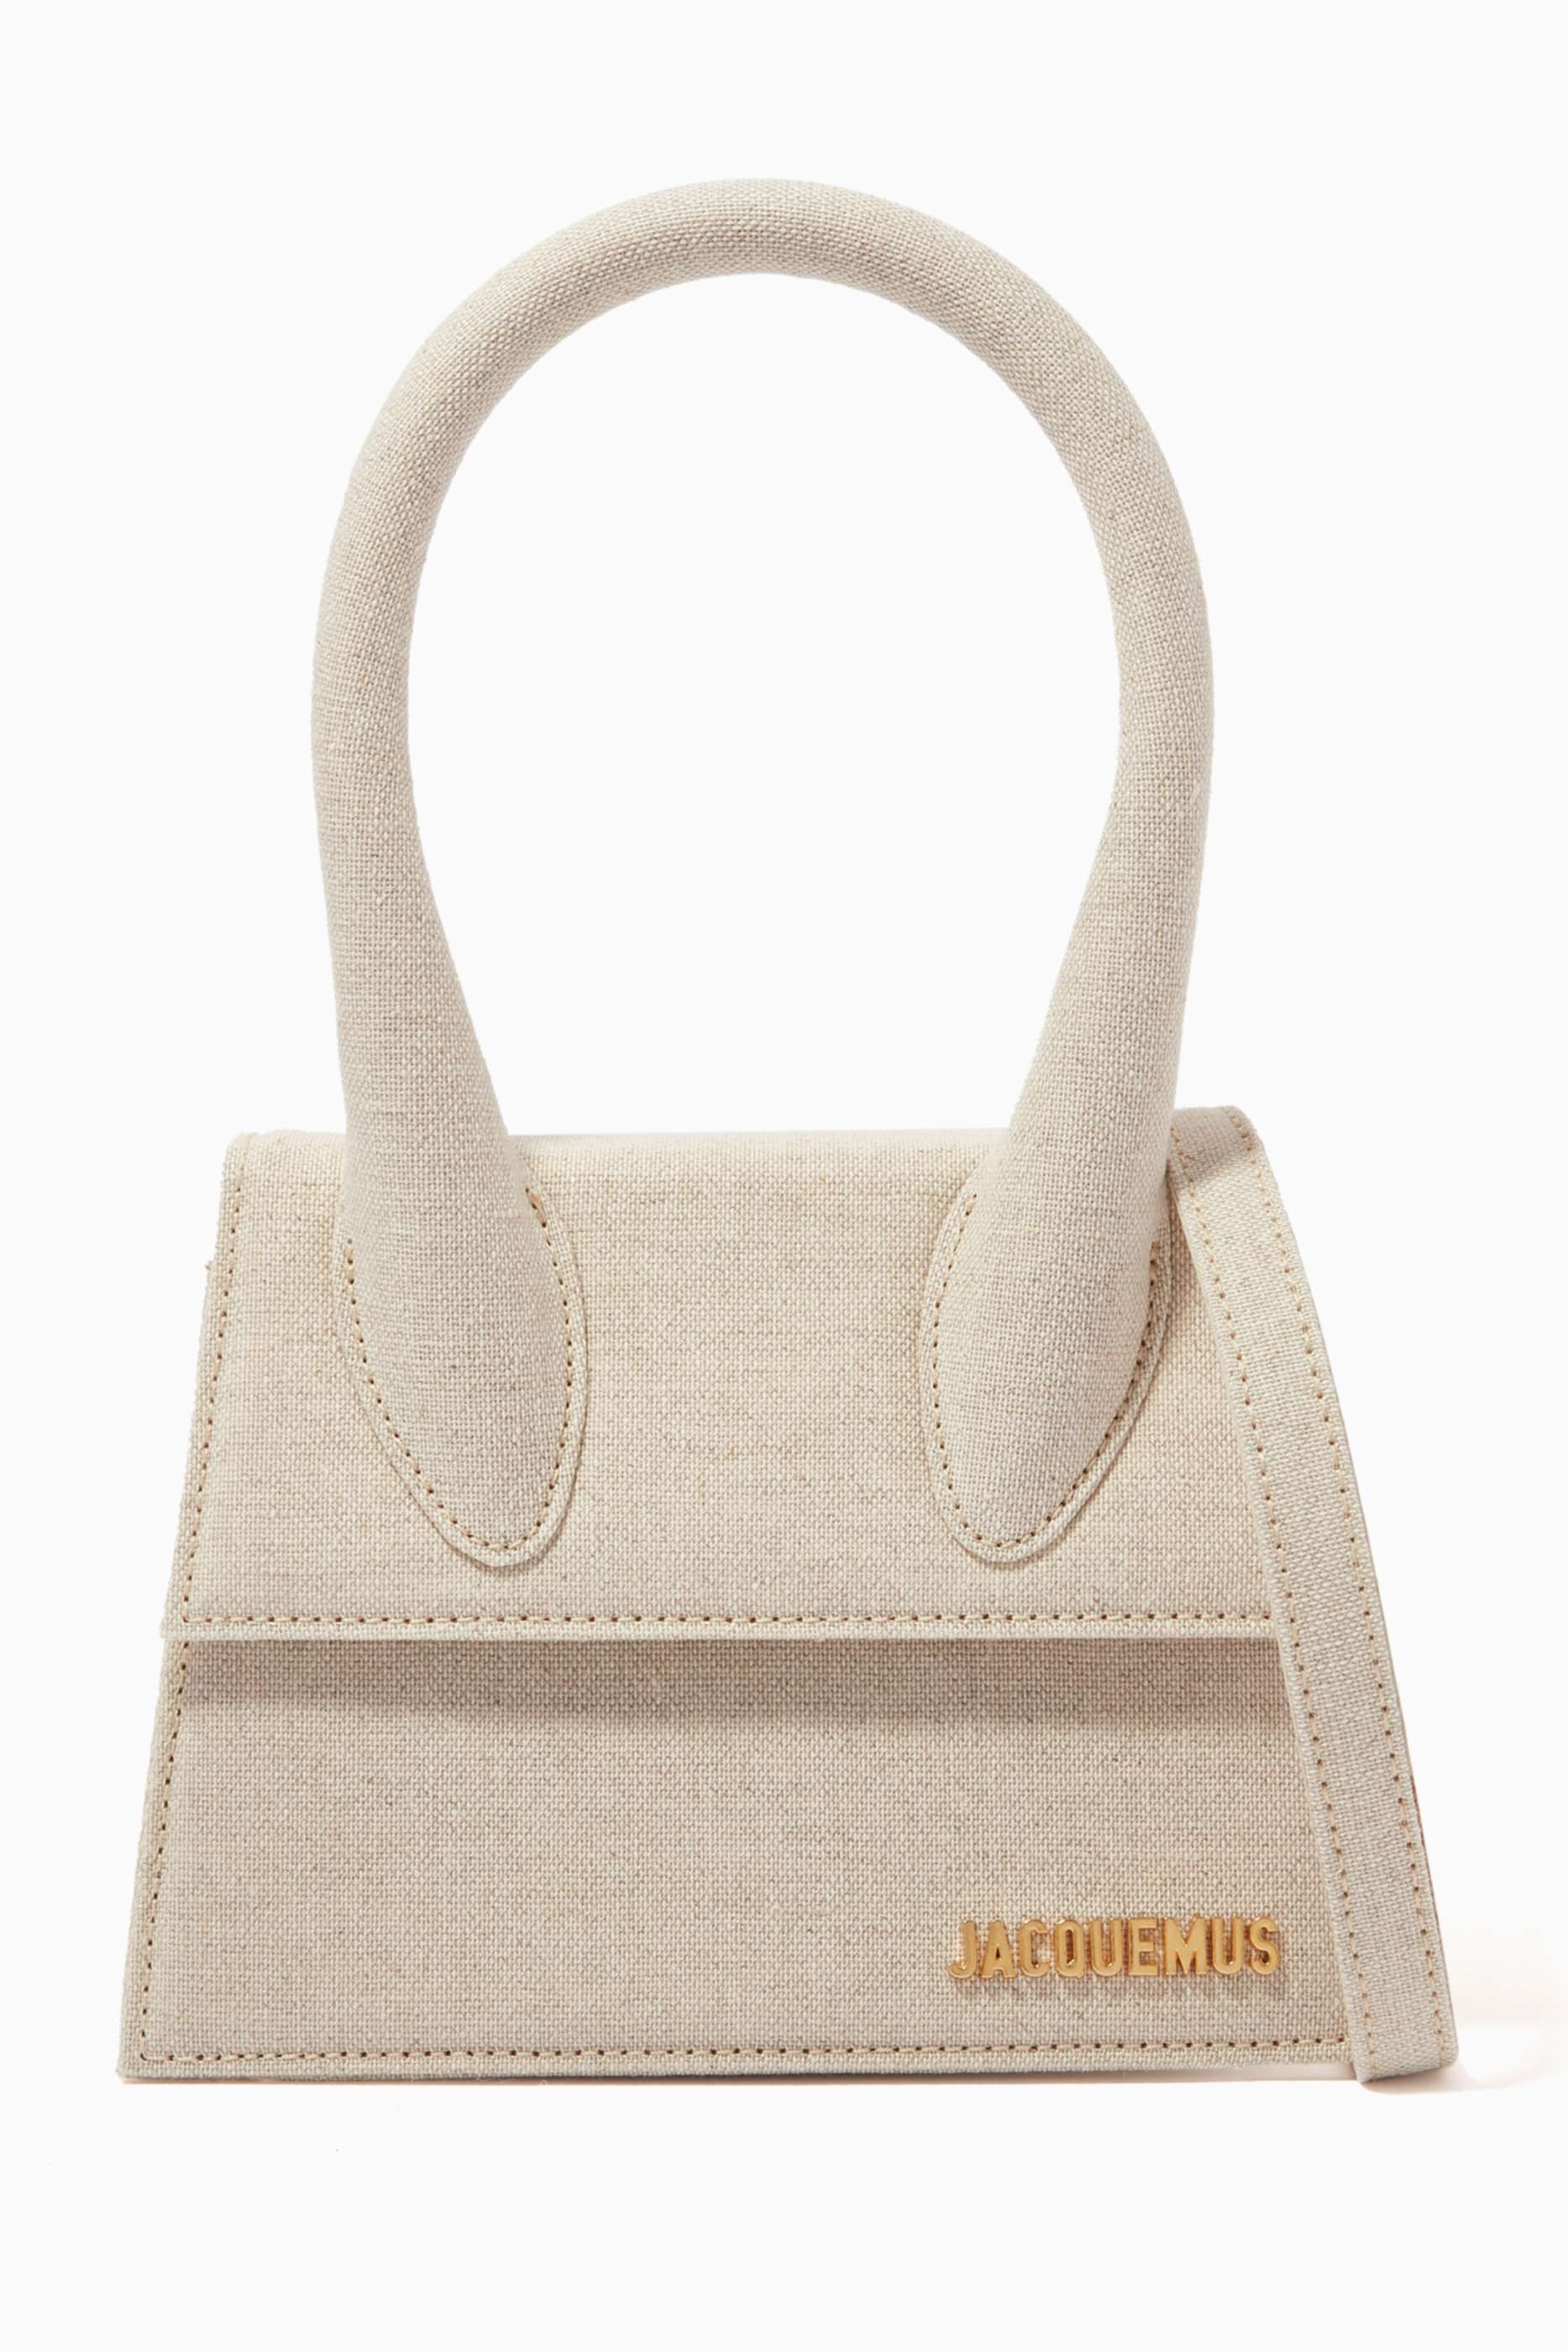 shop-jacquemus-le-chiquito-moyen-signature-bag-in-linen-for-women